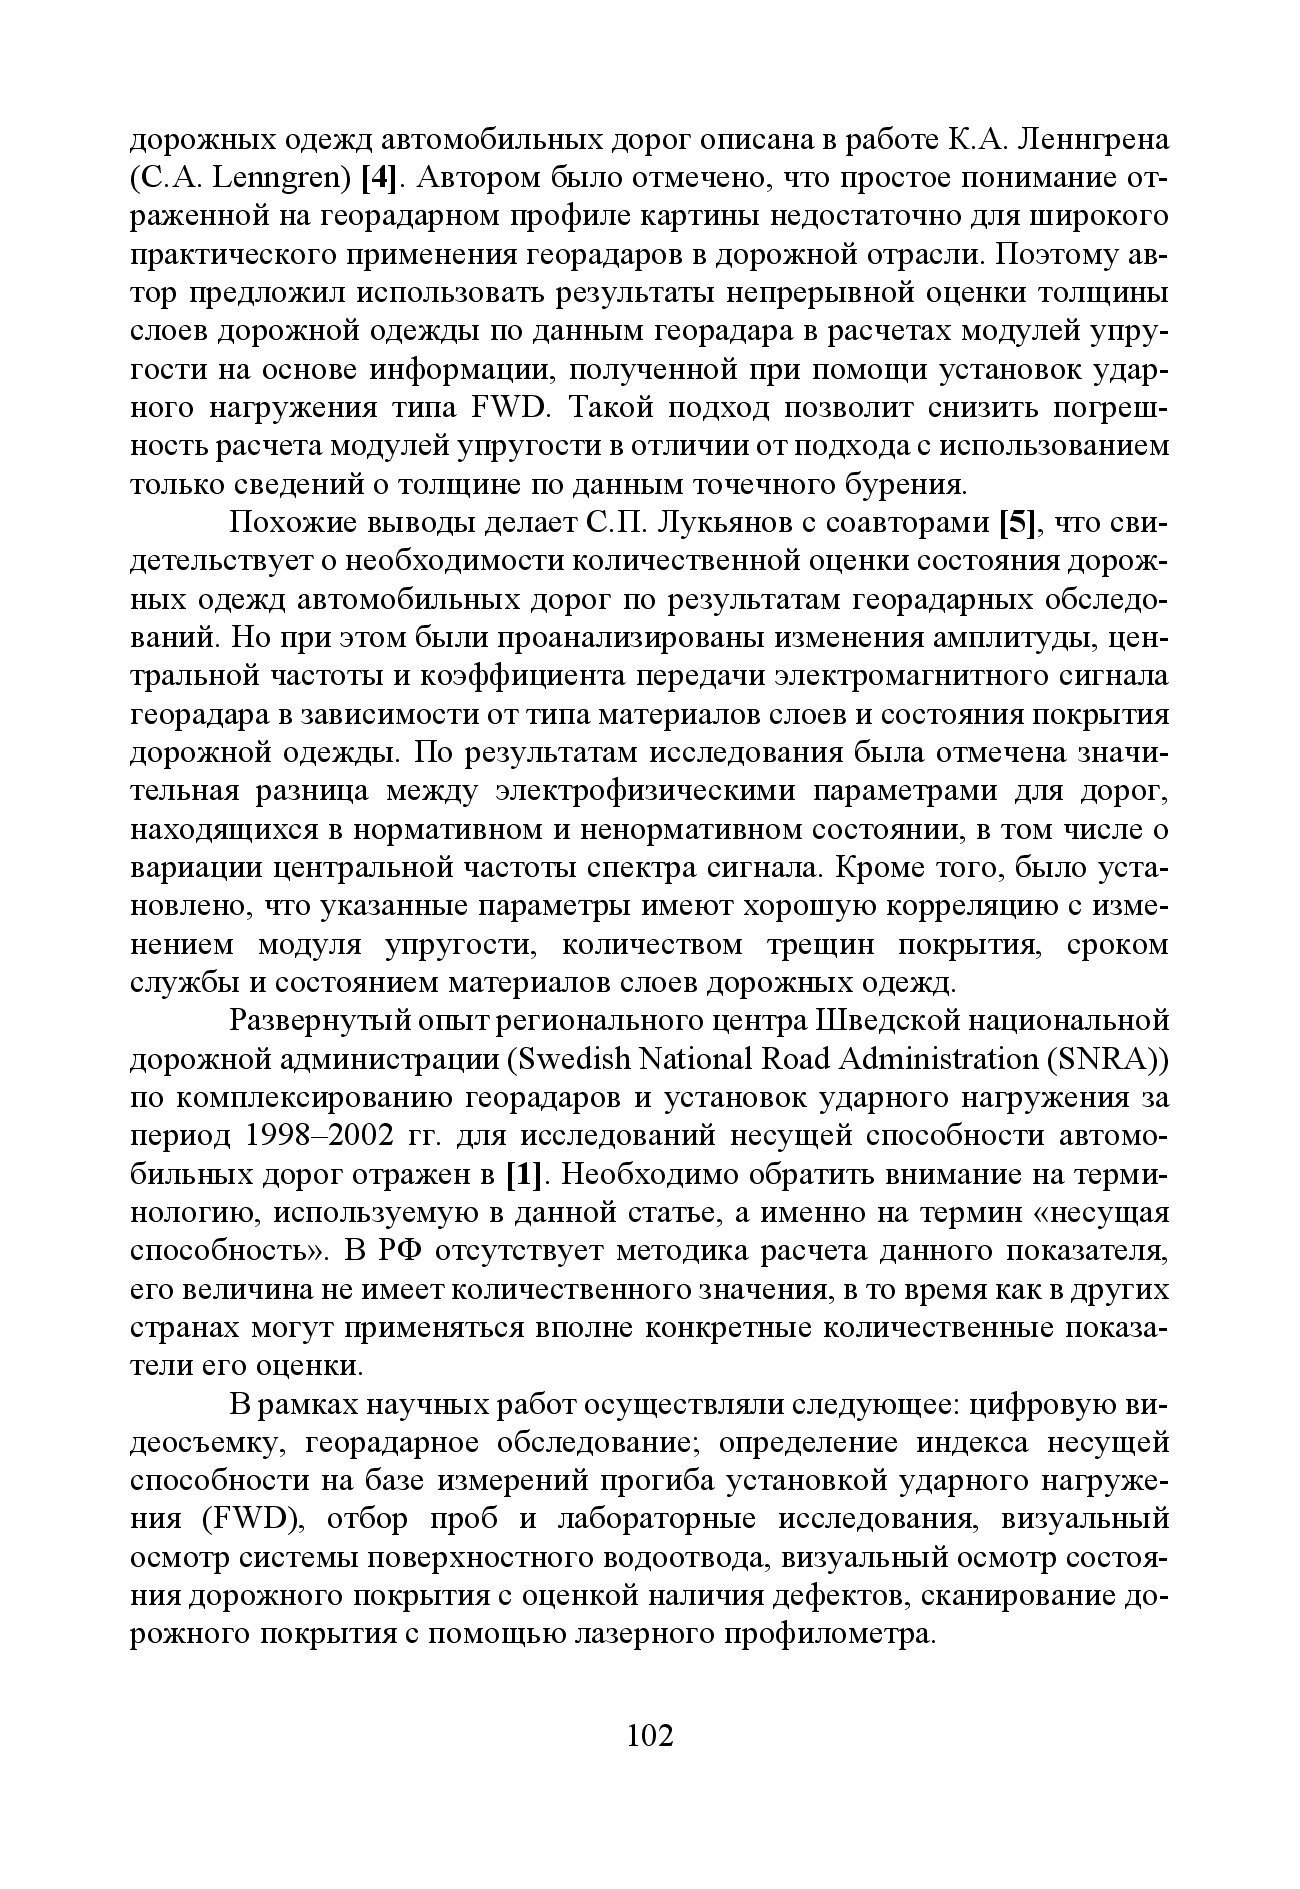 GPR & FWD - выпуск 46 журнал Дороги и мосты_с.102